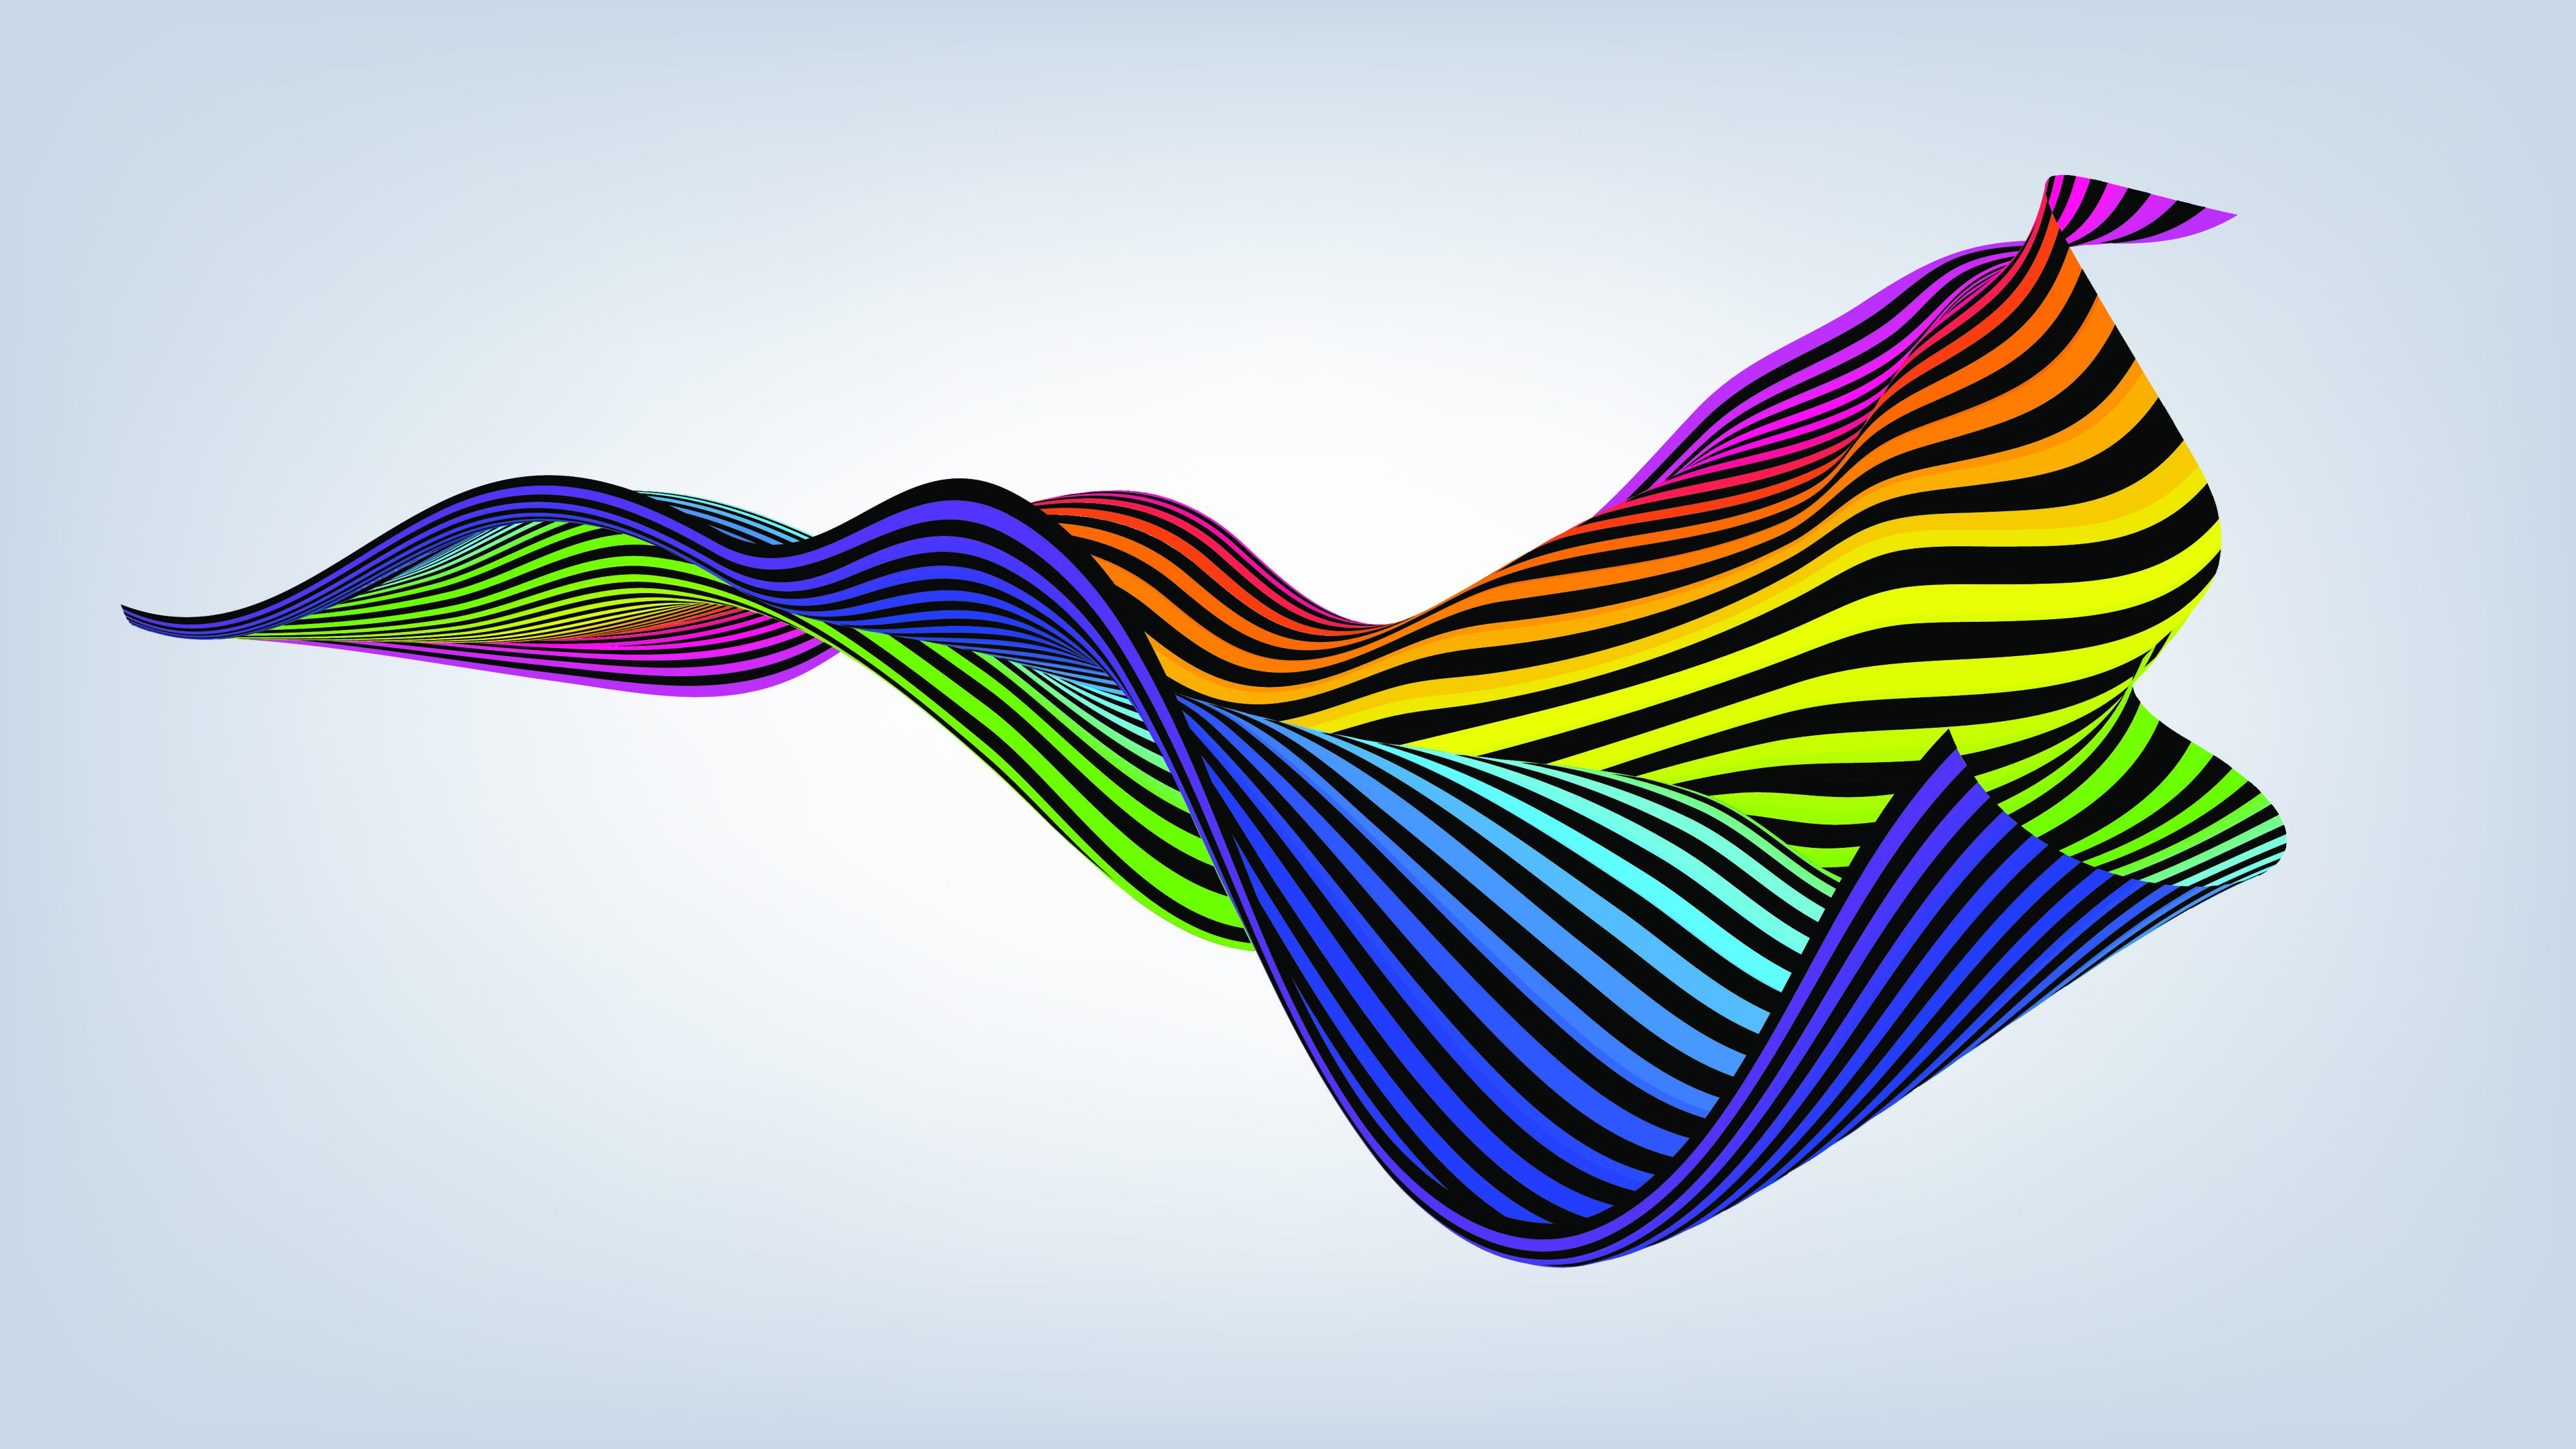 Arte digital vibrante de un patrón de onda fluida con colores del arcoíris sobre fondo gris.